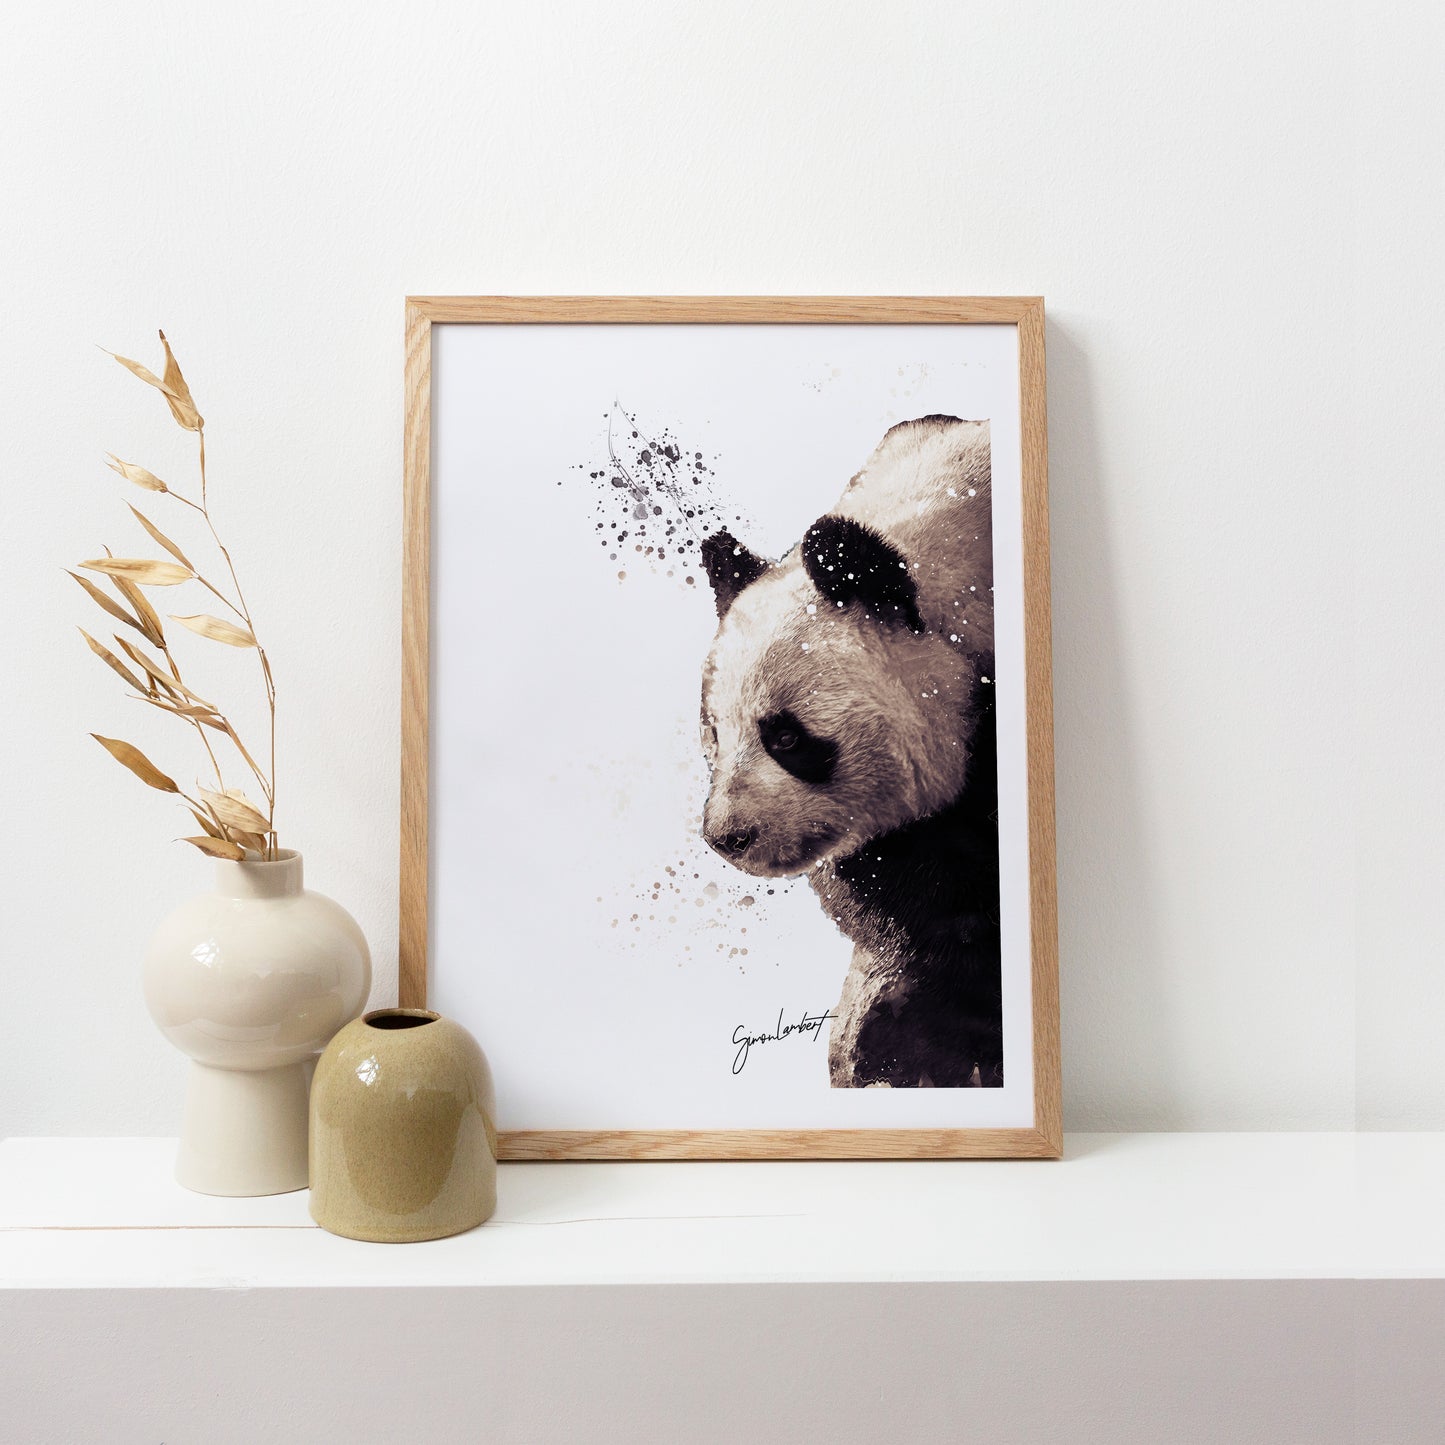 Panda Portrait Splatter Style Artwork Fine Art Print (Unframed)